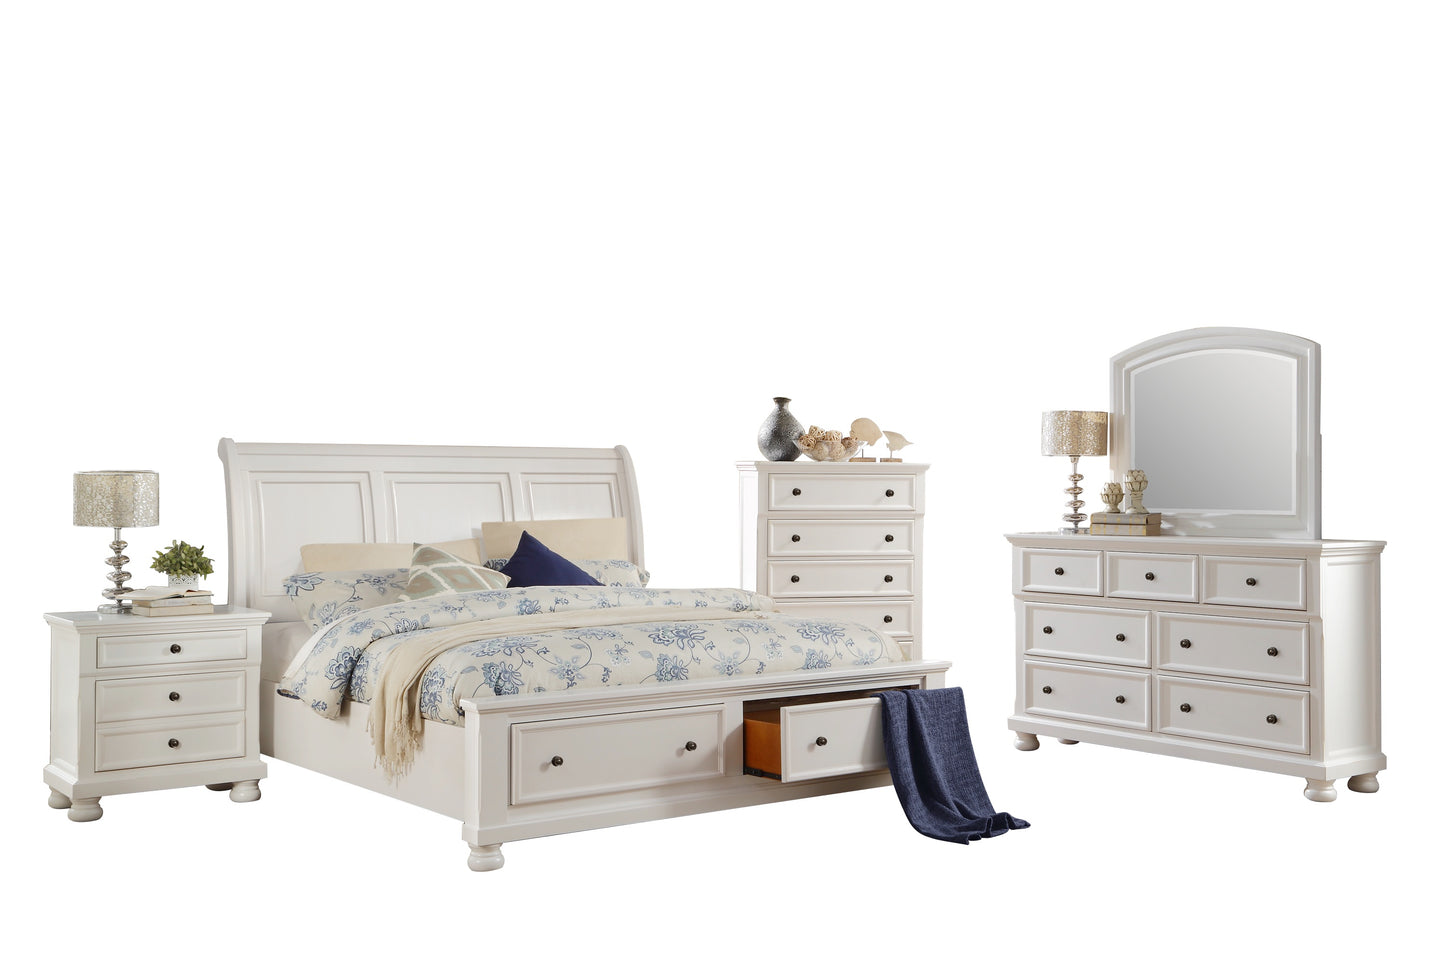 Lexington Cottage 5PC Bedroom Set Queen Sleigh Storage Bed, Dresser, Mirror, Nightstand, Chest in White